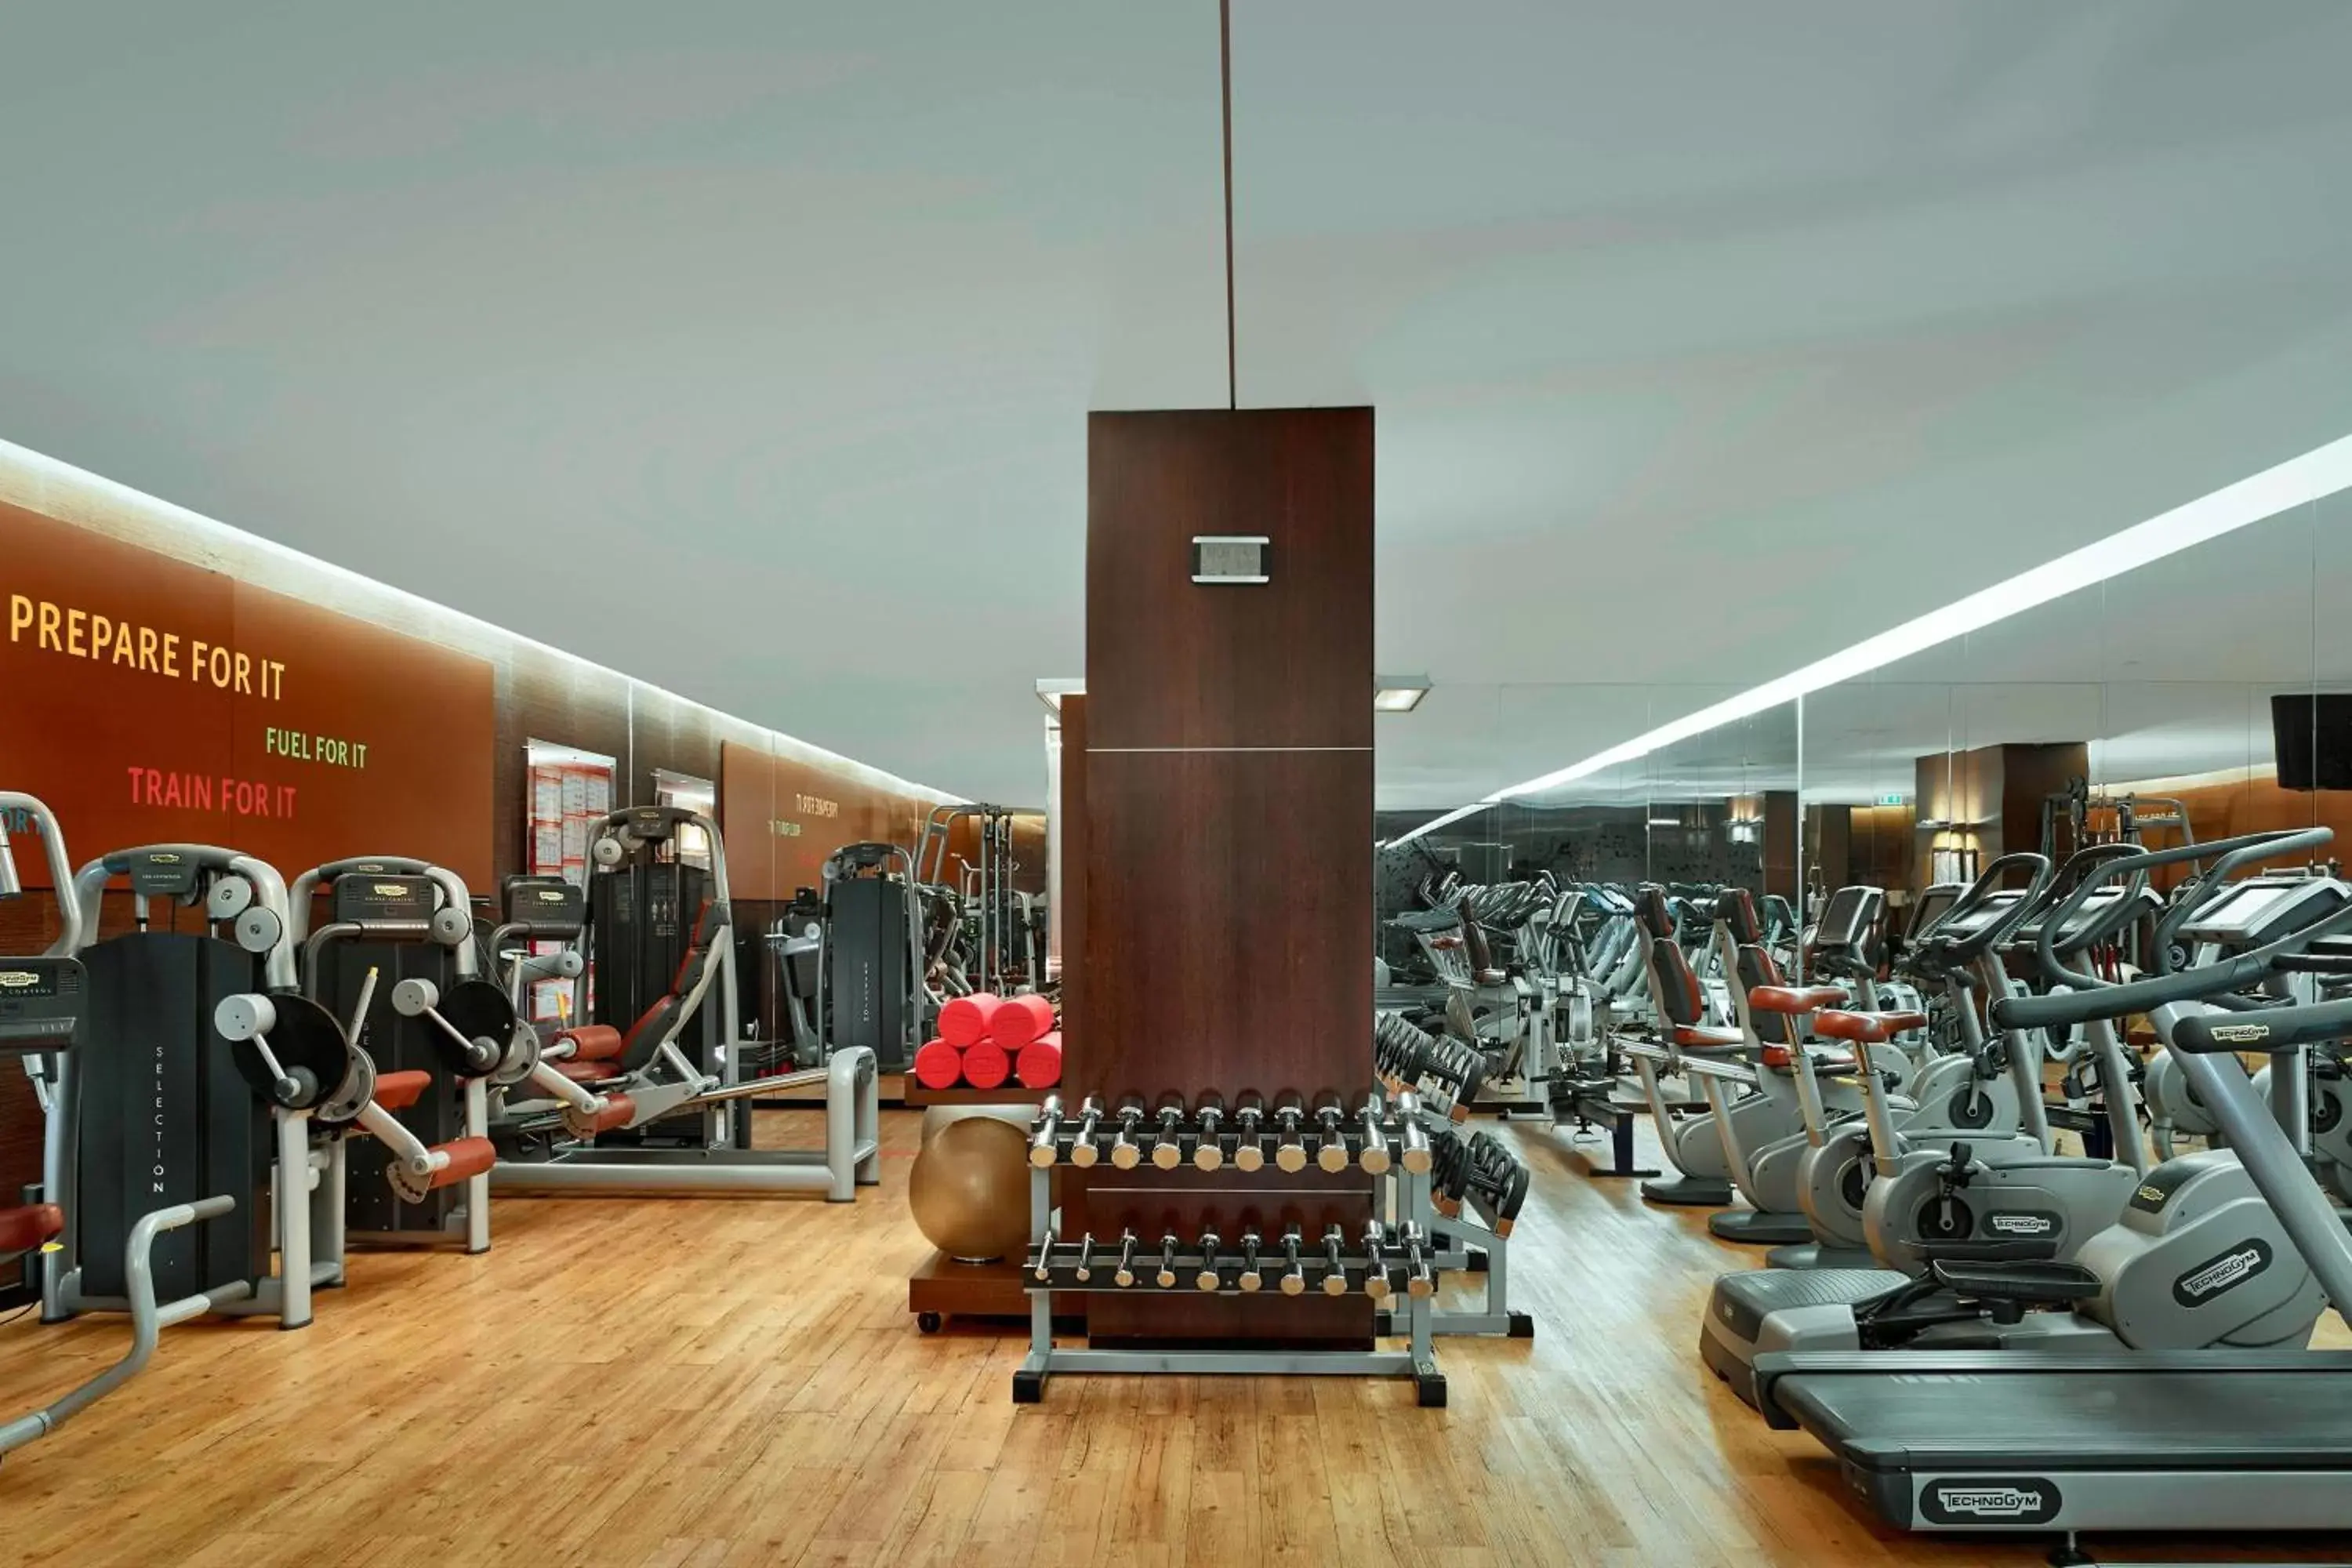 Fitness centre/facilities, Fitness Center/Facilities in Sheraton Porto Hotel & Spa